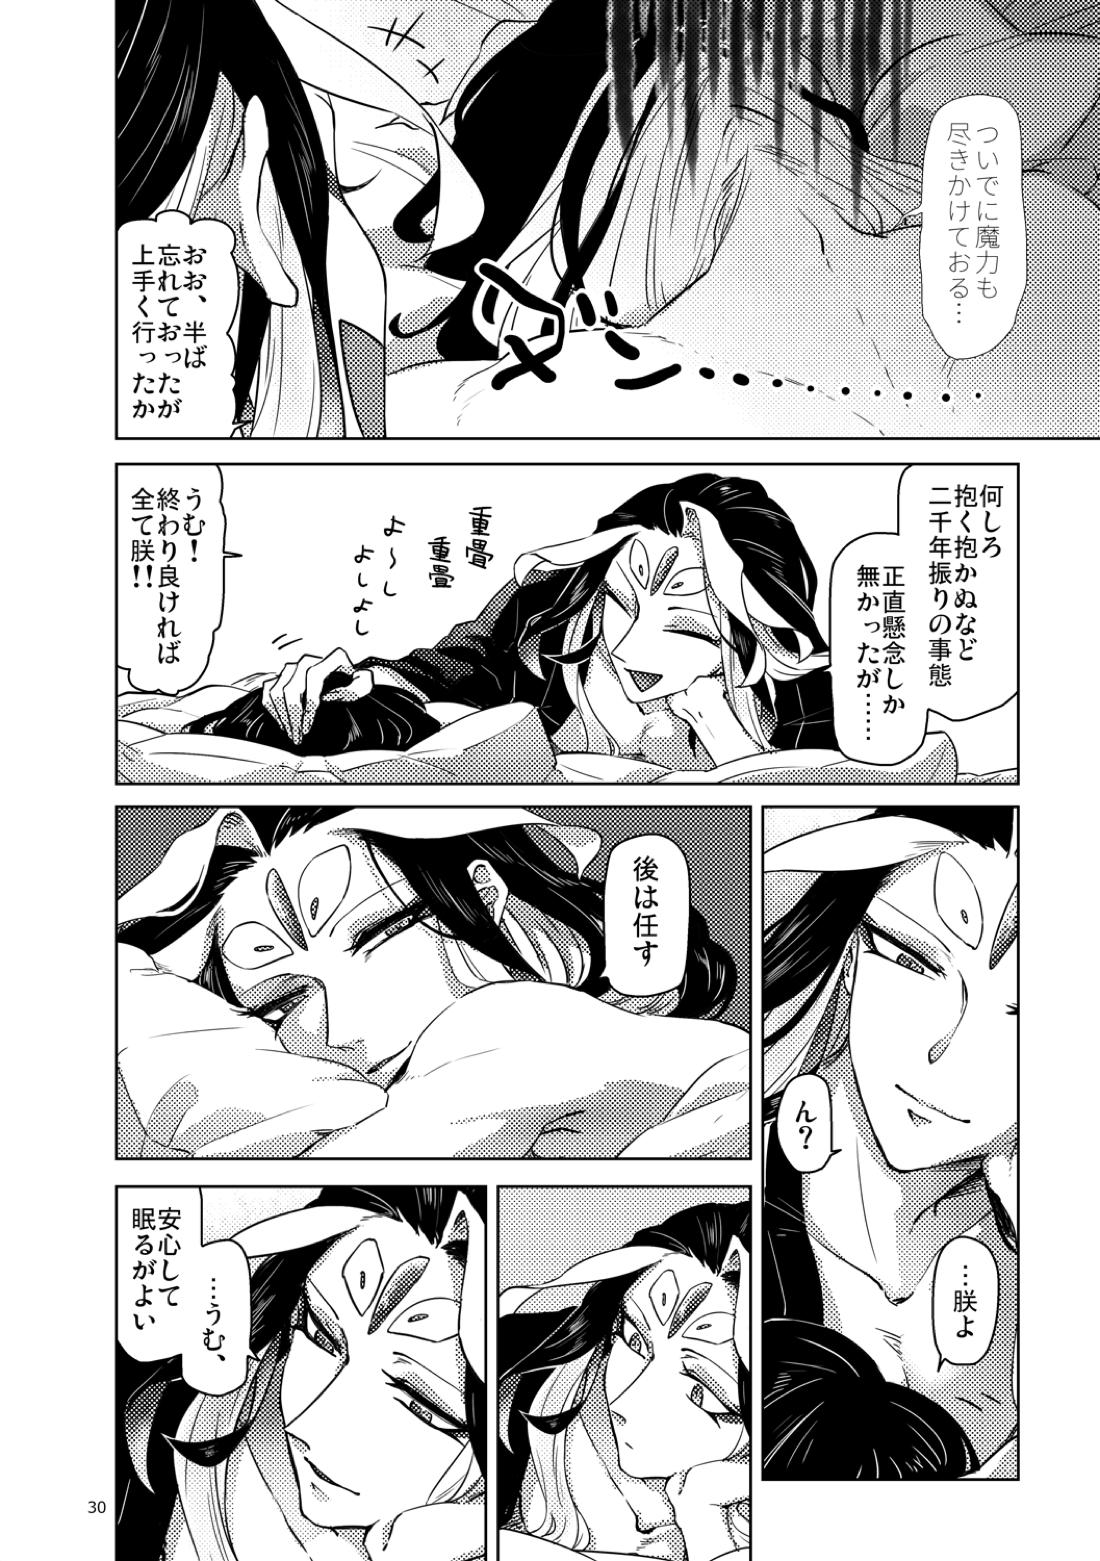 【BL漫画 Fate/Grand Order】男性体と無性体の始皇帝が同期するために媚薬を口にしながら肌を重ねるイチャイチャボーイズラブエッチ31